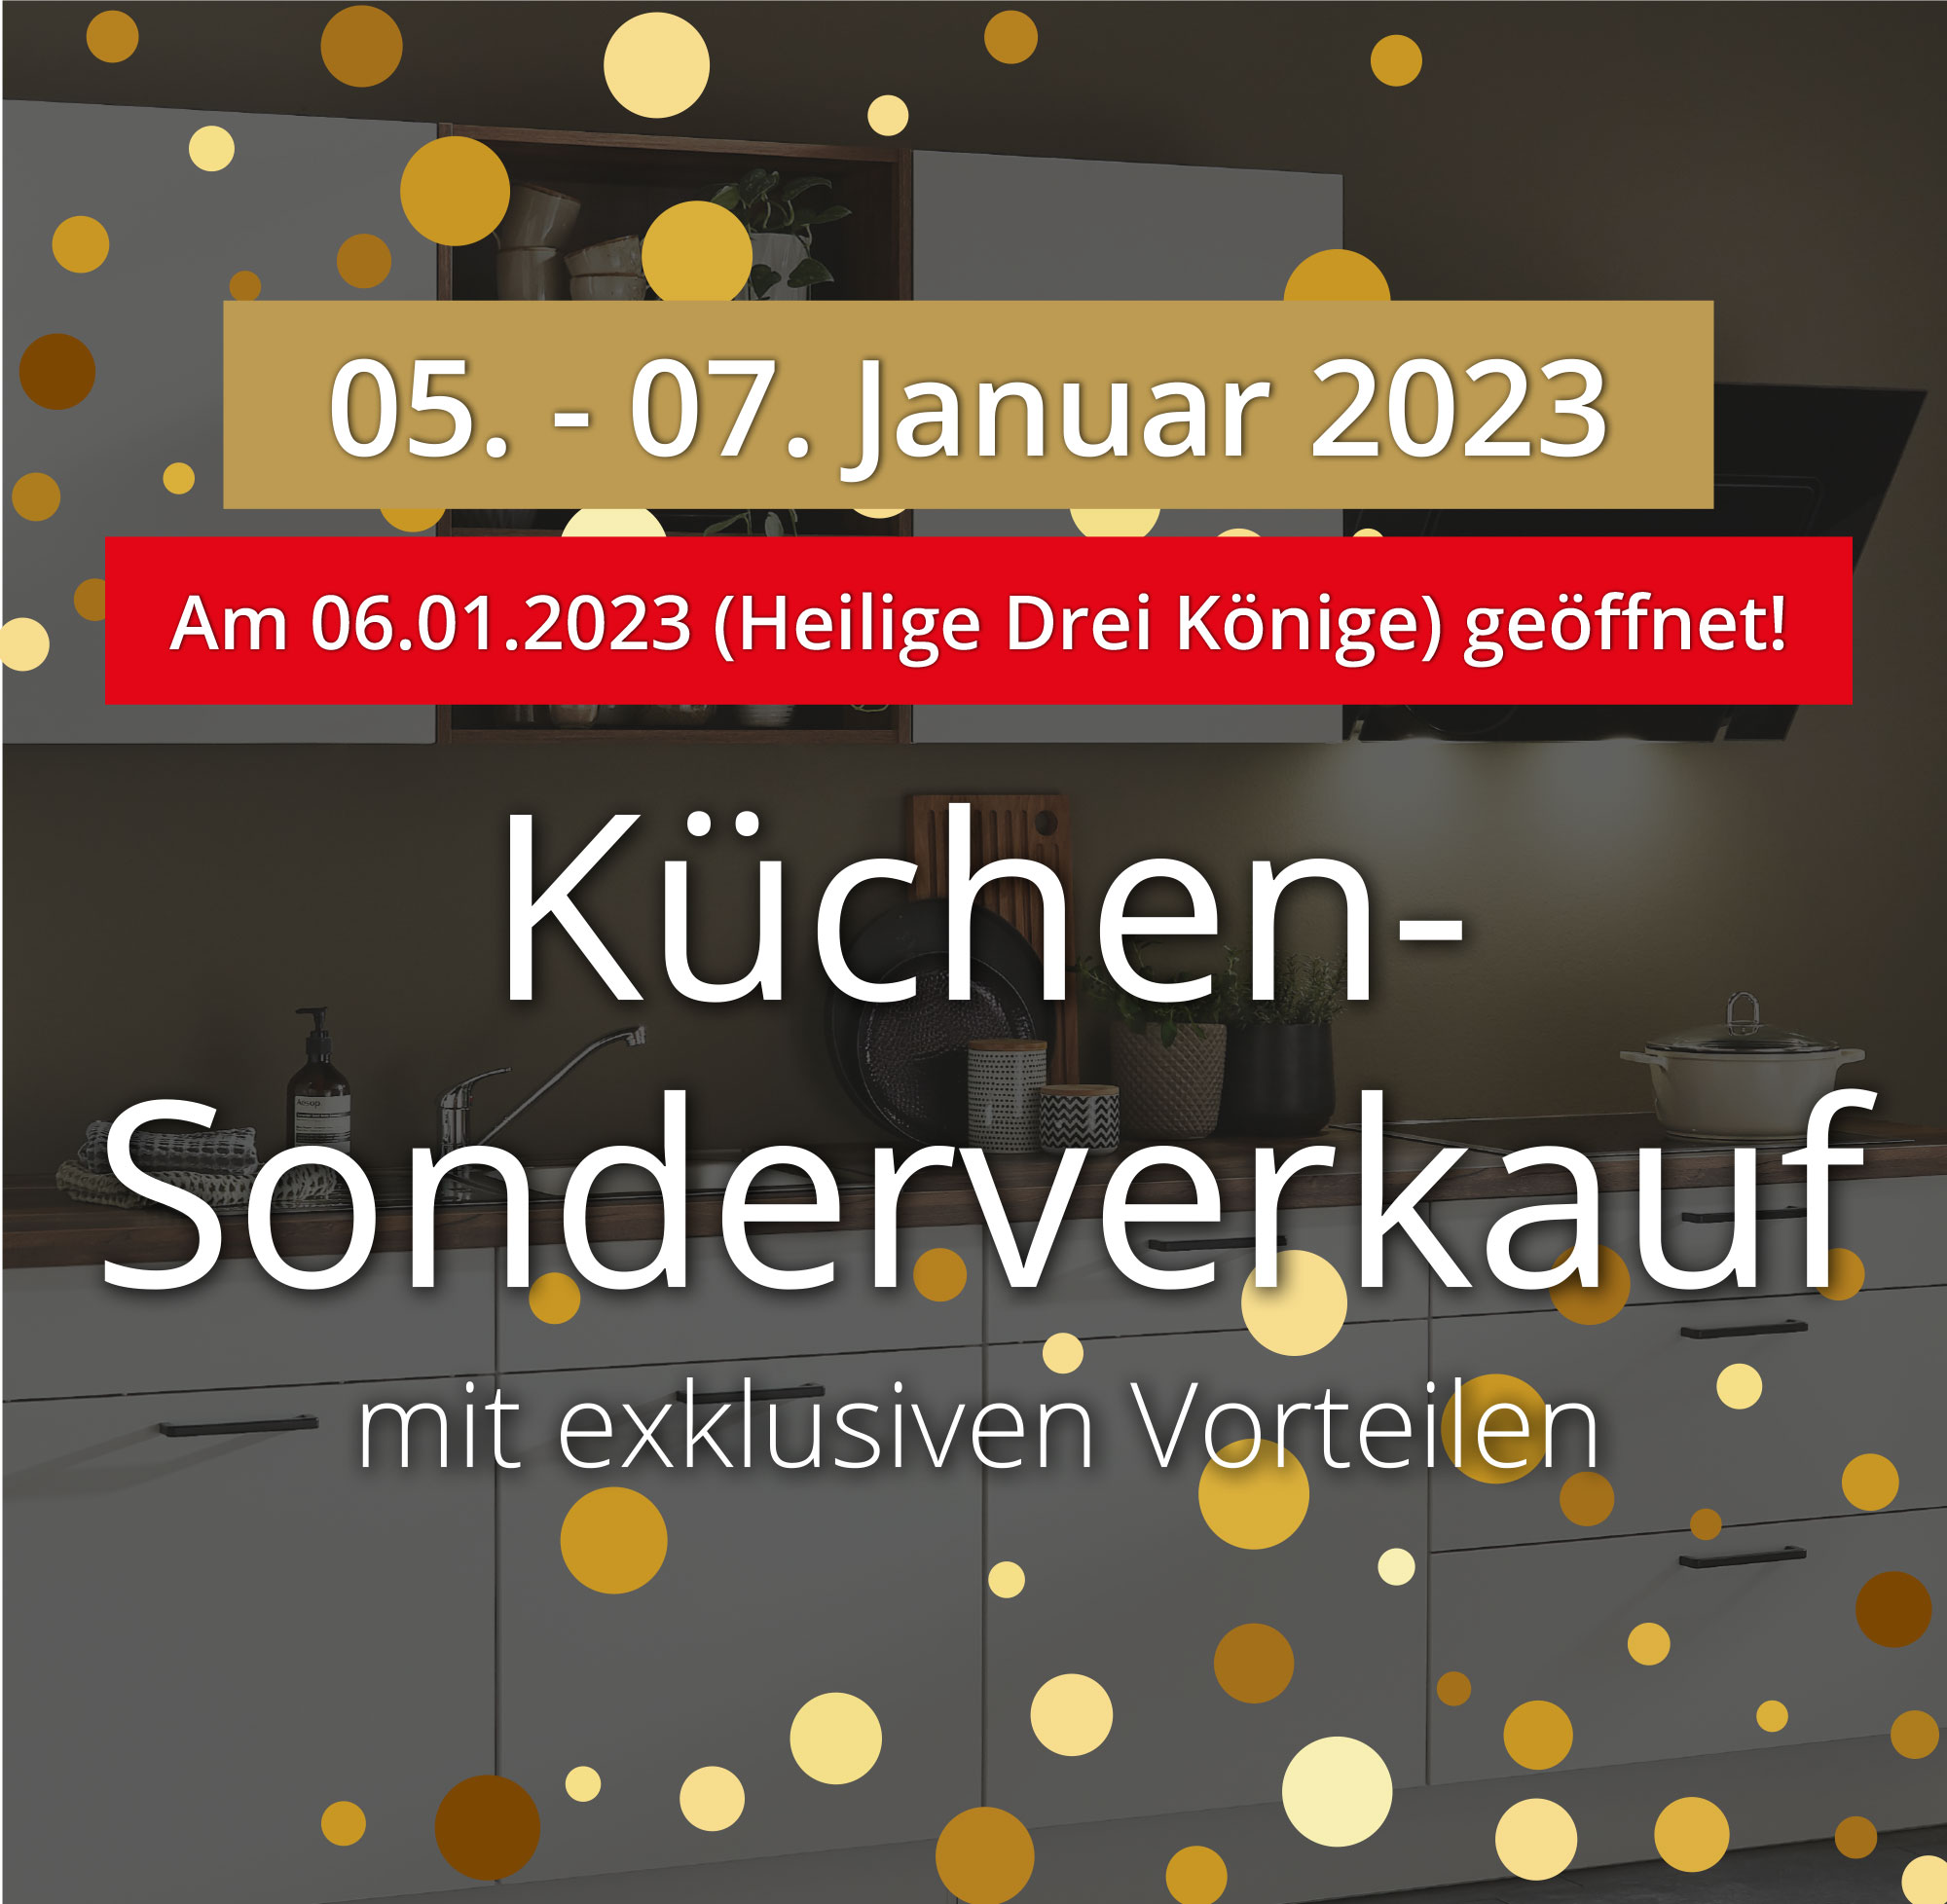 Küchen-Sonderverkauf mit exklusiven Vorteilen vom 05. - 07. Januar 2023